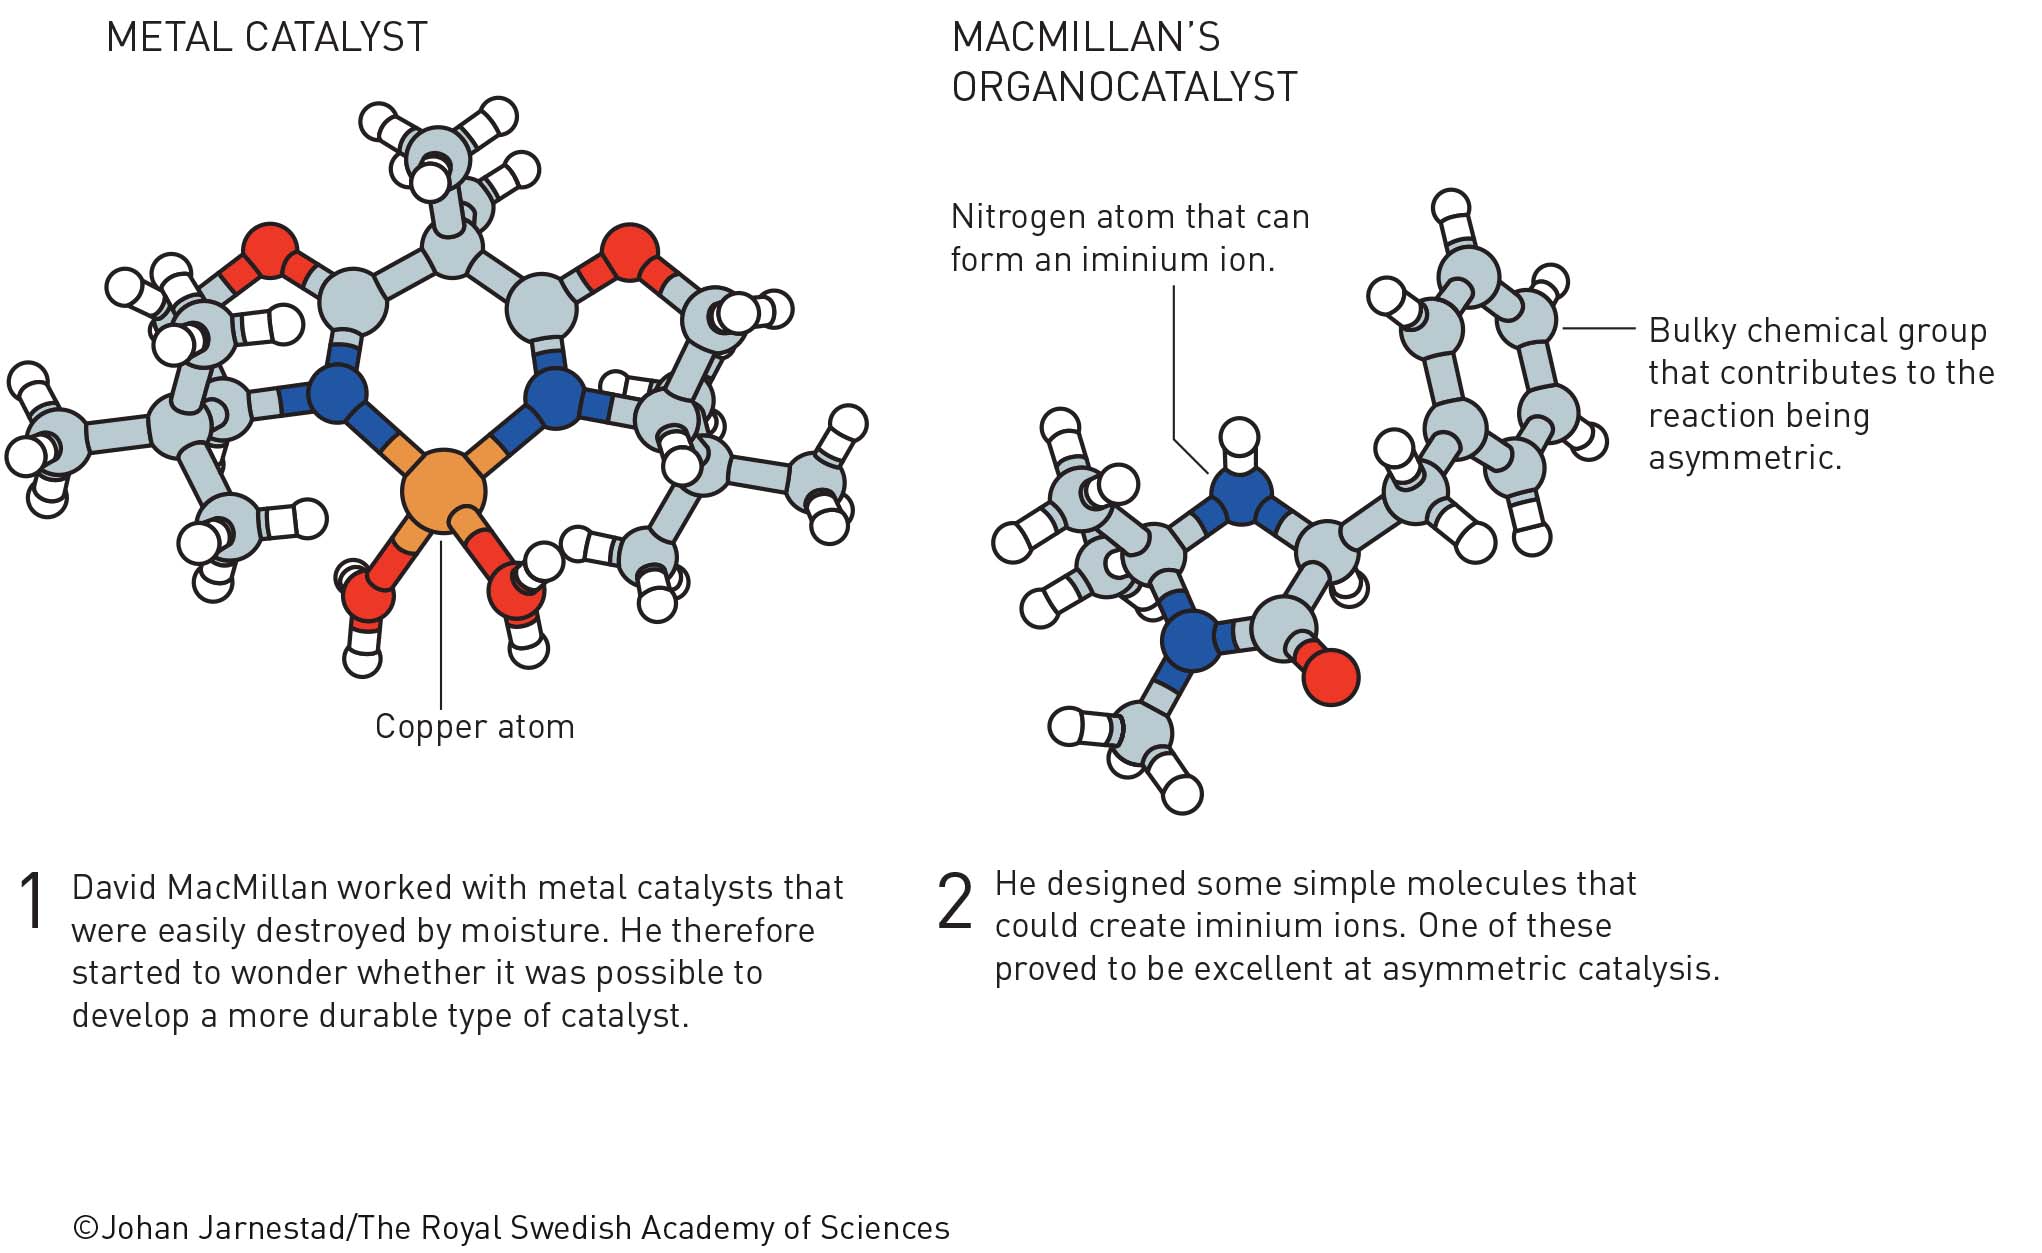 Нобелевскую премию по химии присудили за асимметрический органокатализ